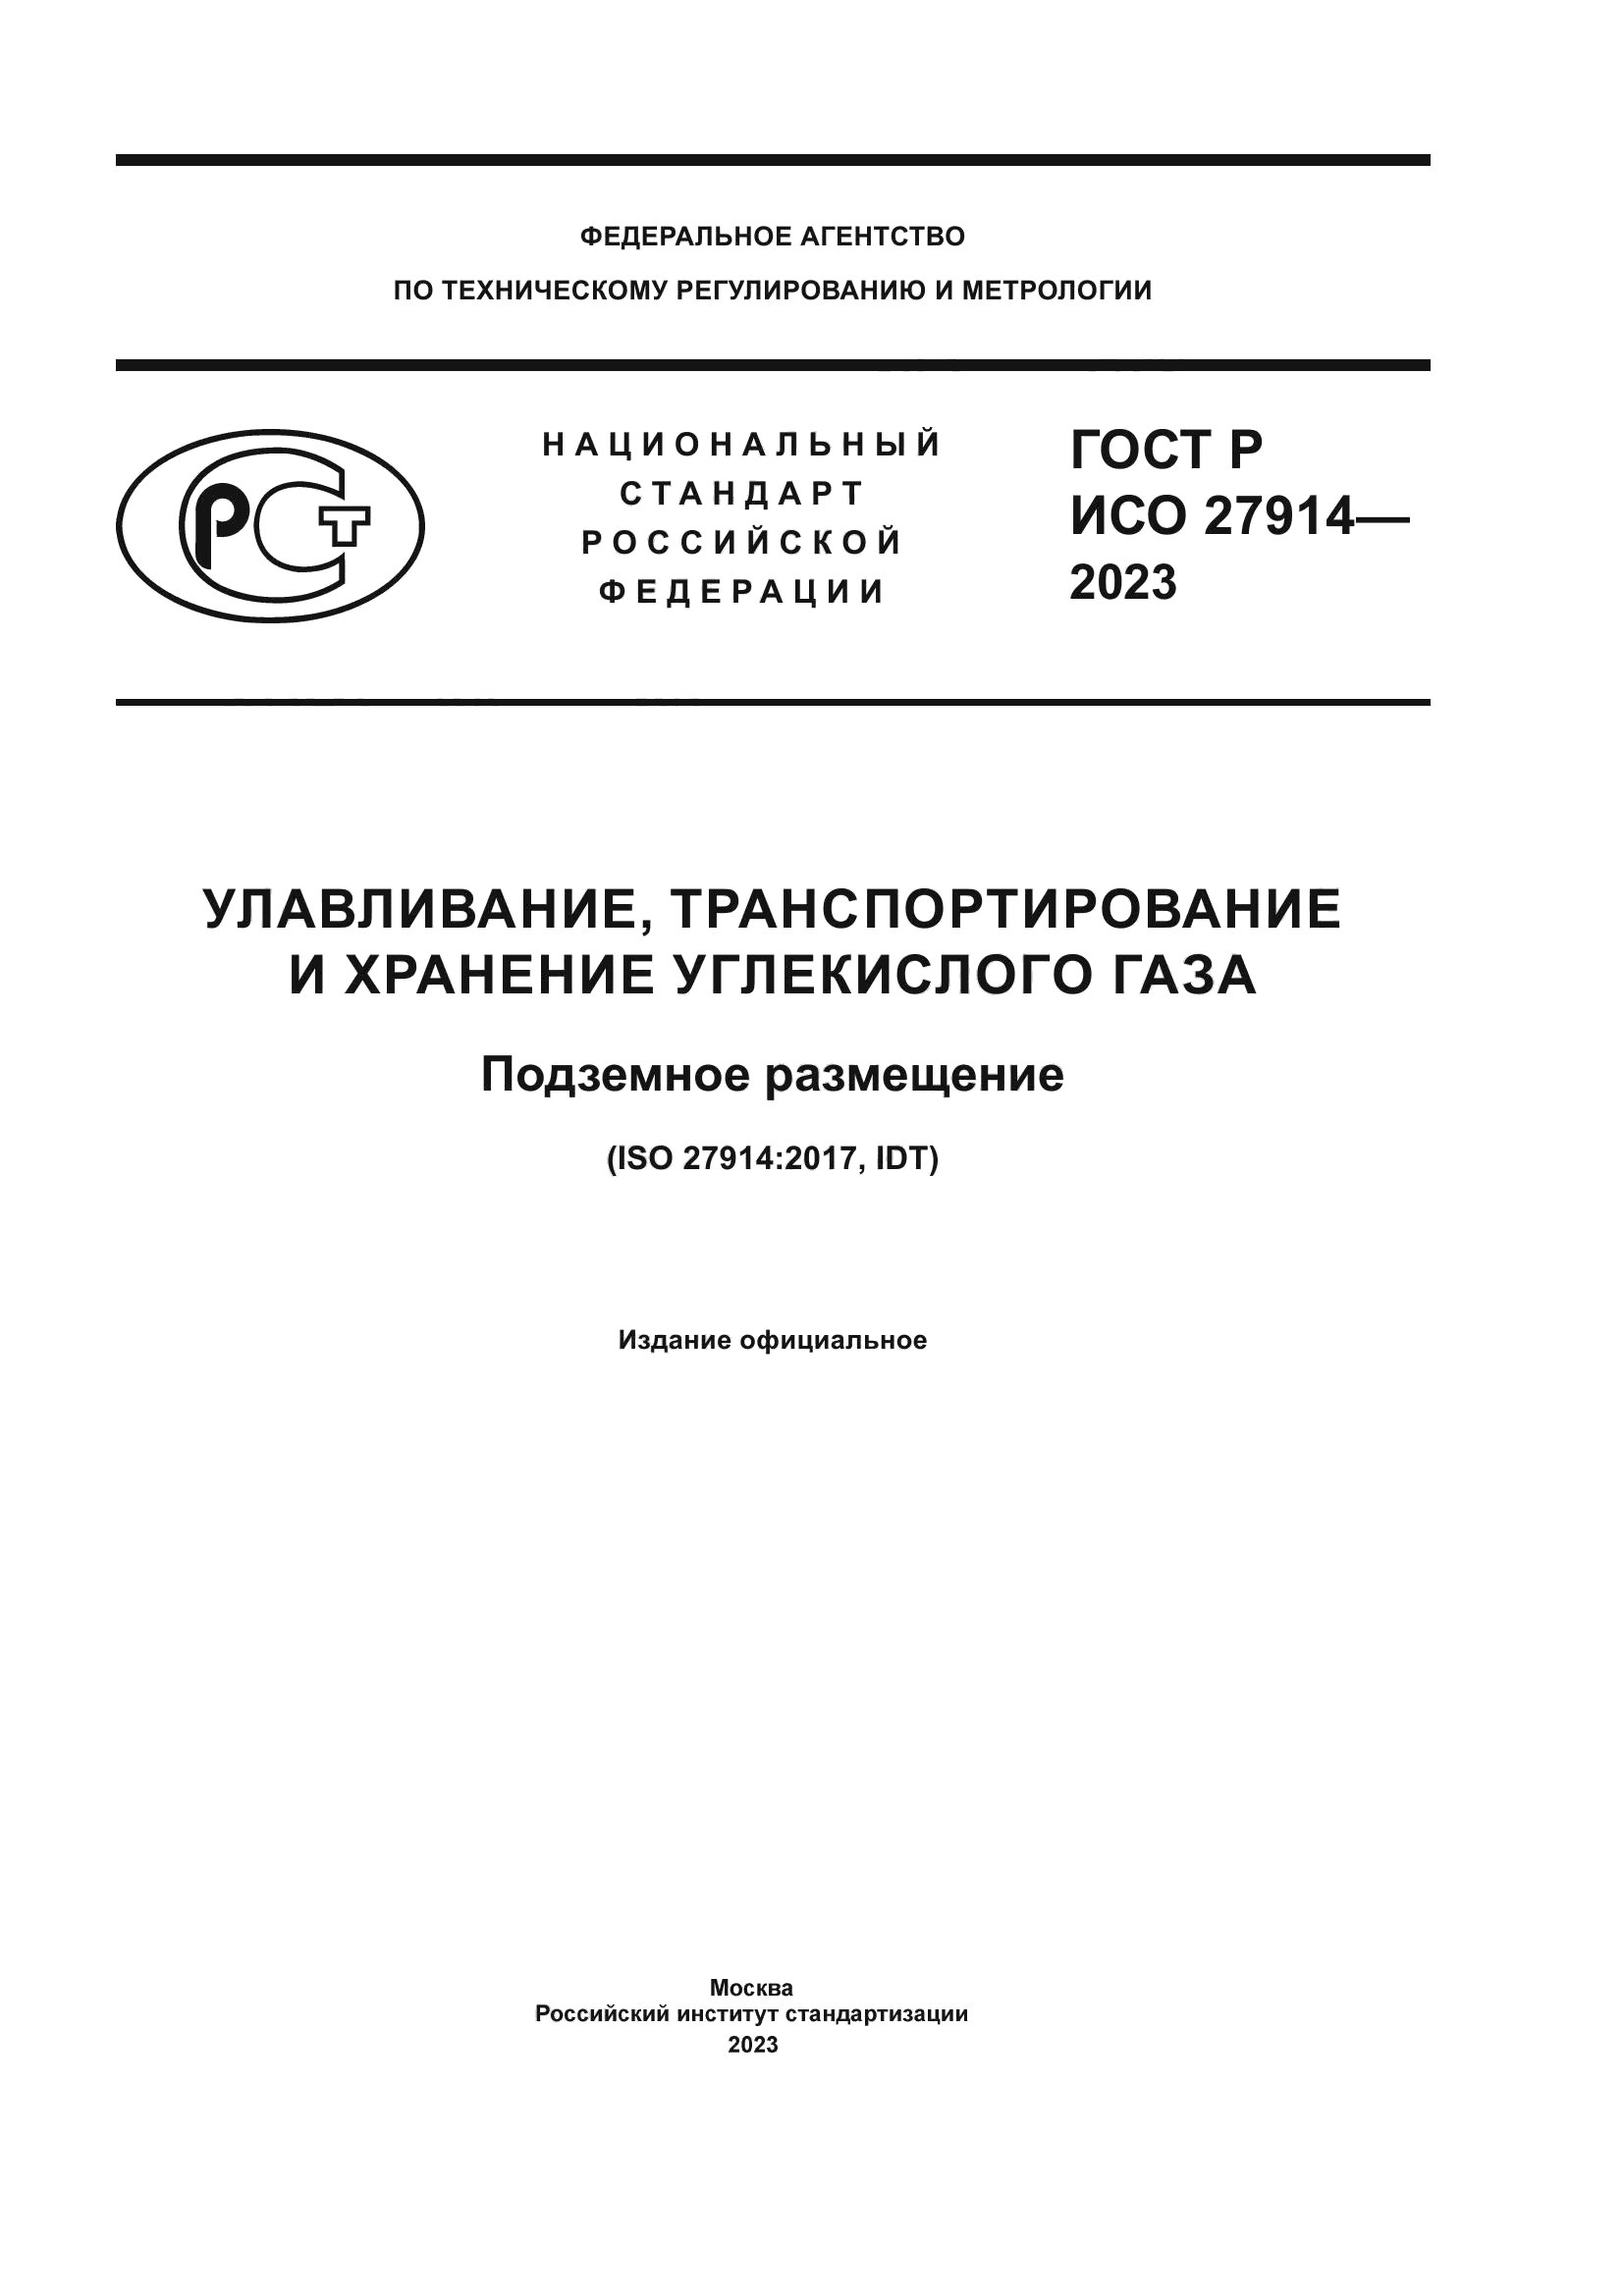 ГОСТ Р ИСО 27914-2023